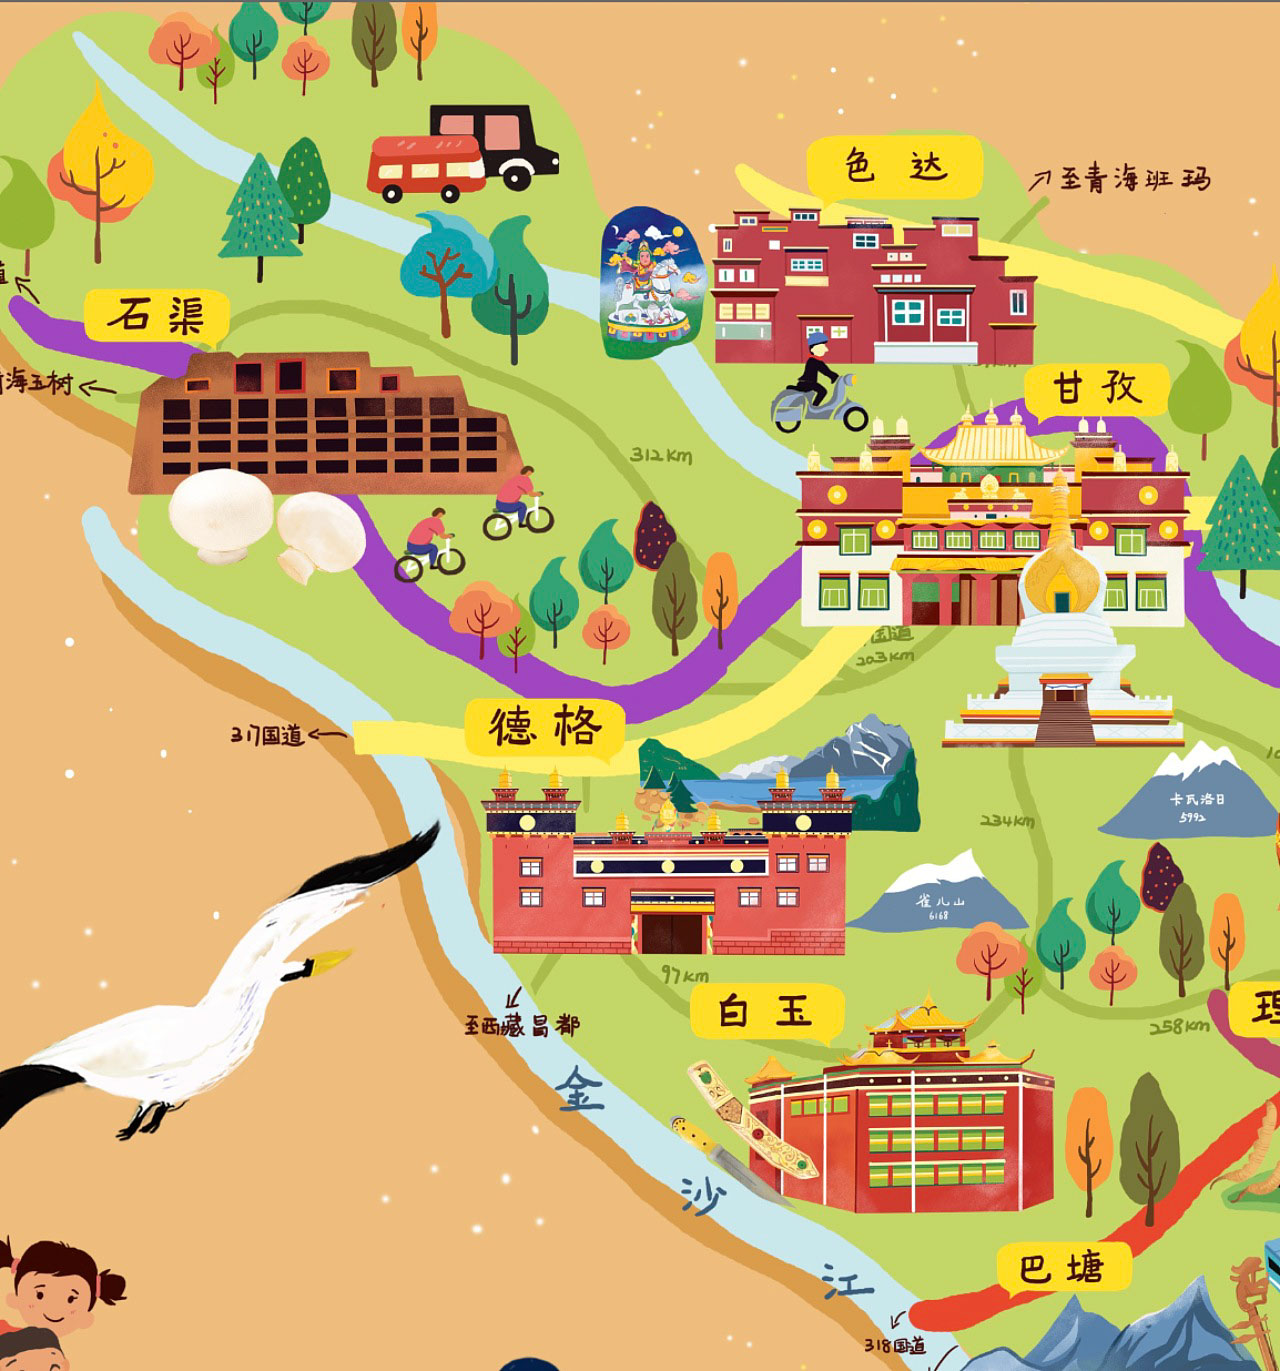 岳普湖语音导览让旅游更有趣